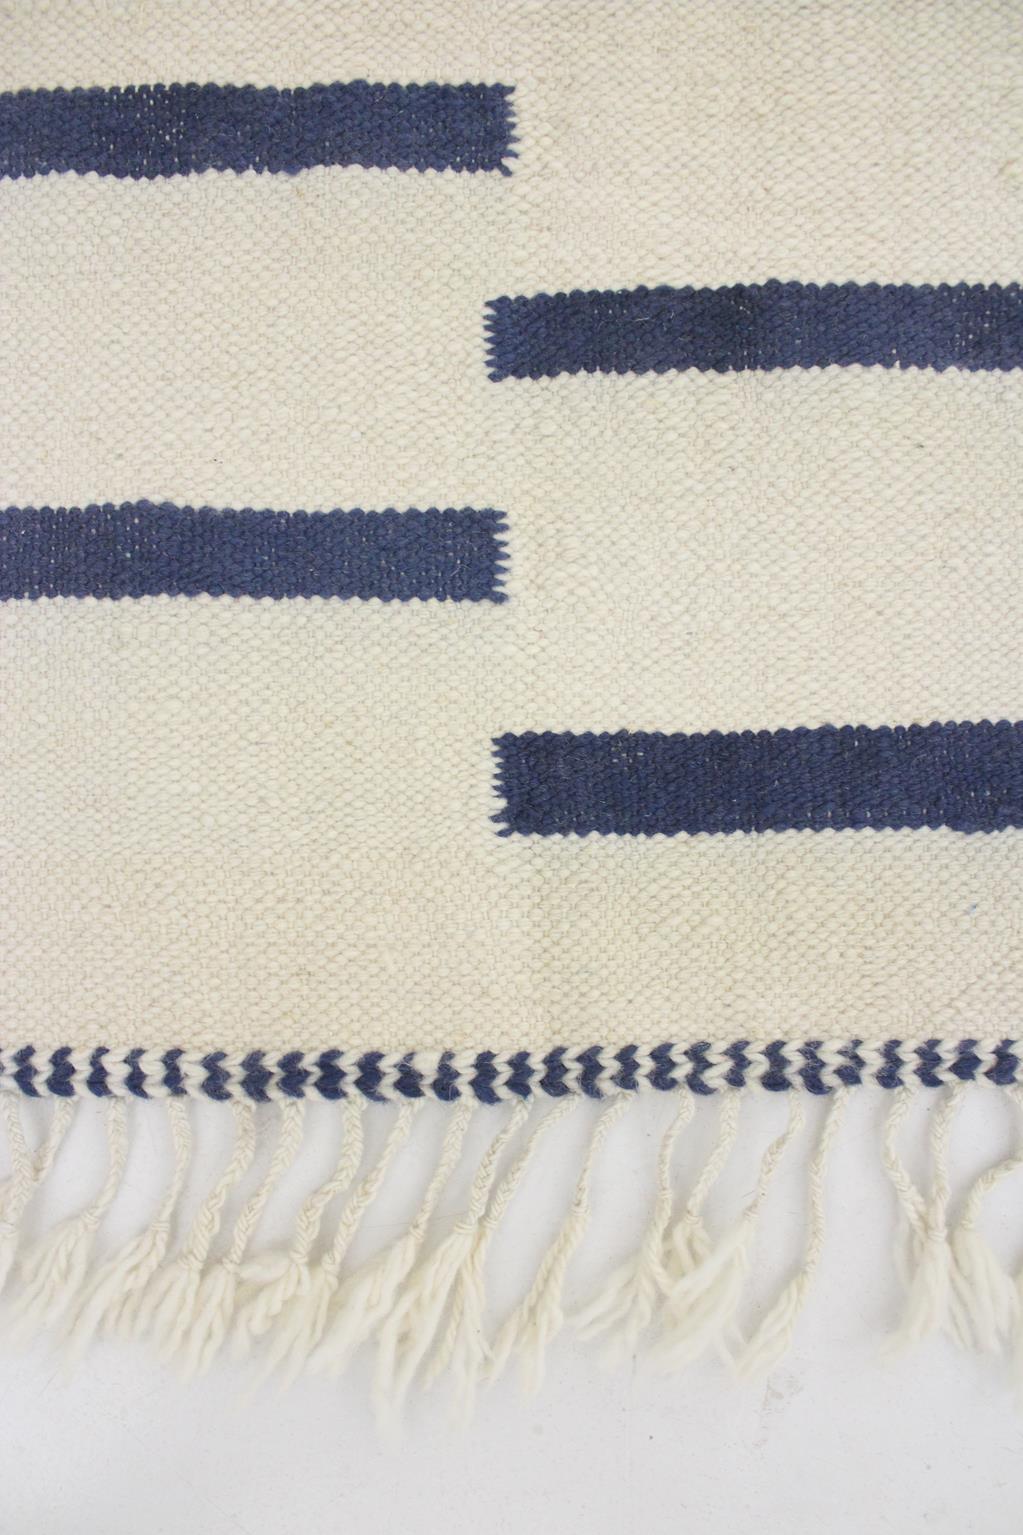 Modern Moroccan kilim rug - Cream/blue - 6.5x10.6feet / 200x323cm For Sale 6